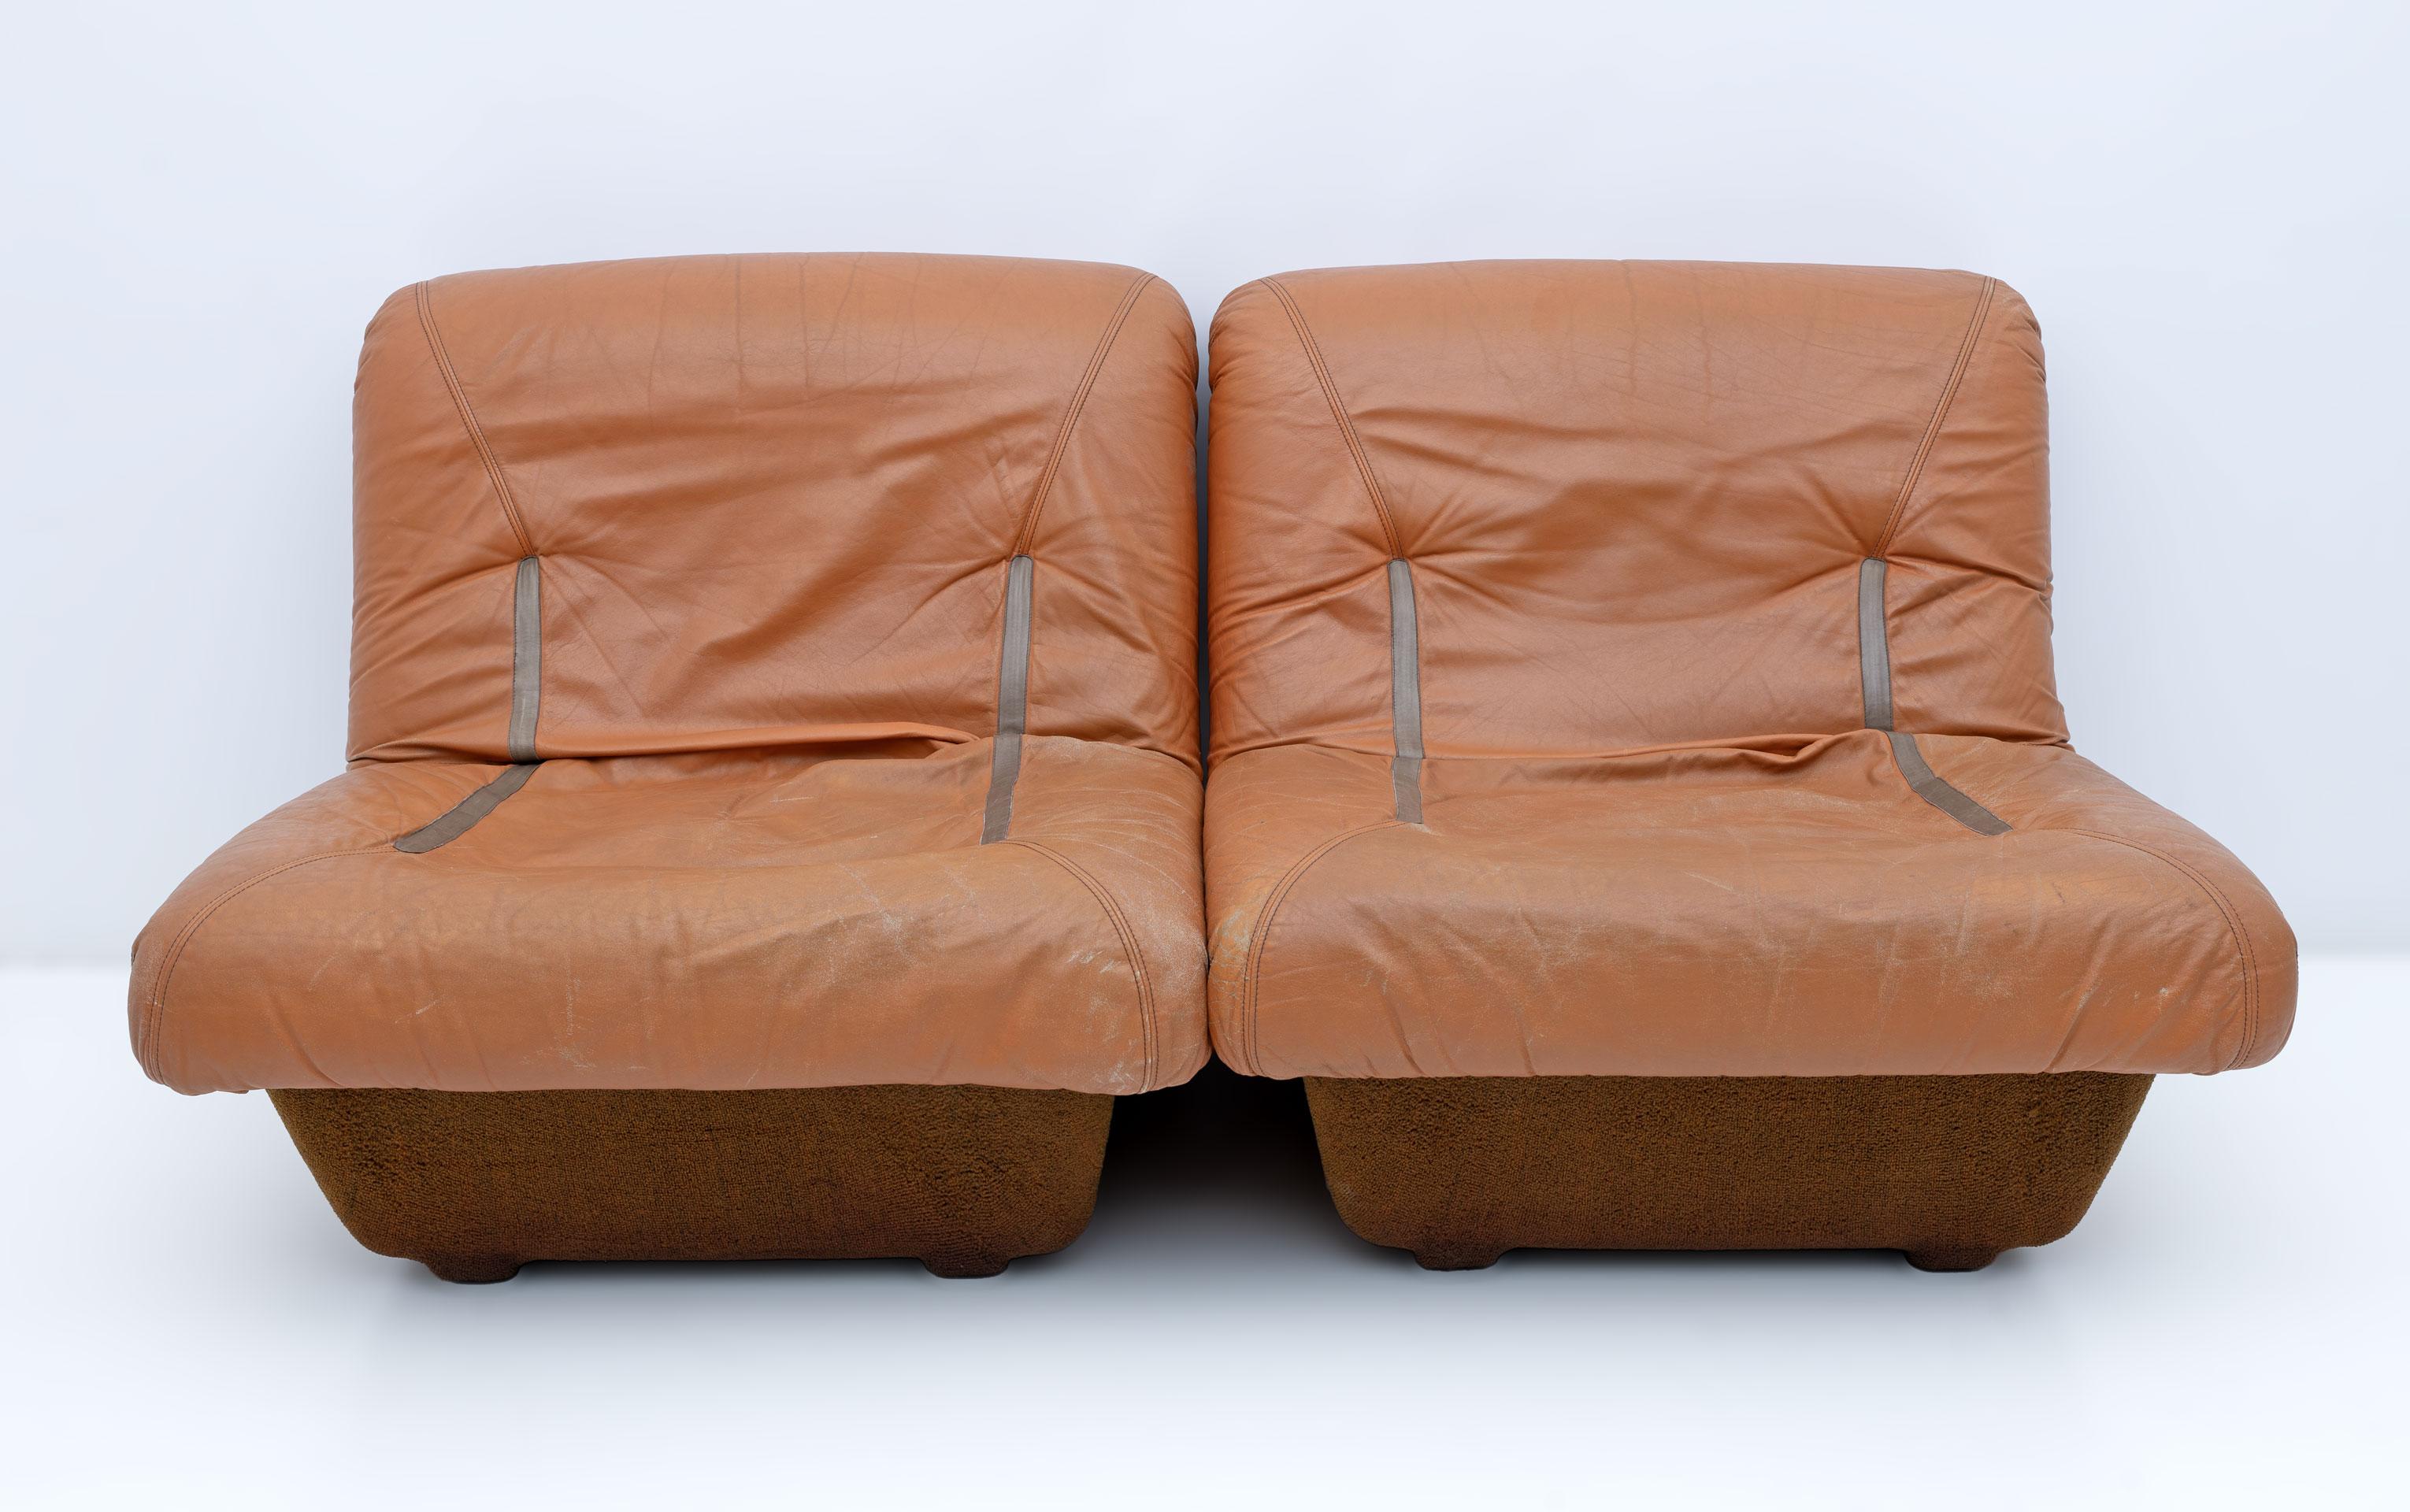 Canapé modulable composé de 2 fauteuils en cuir véritable déhoussable avec structure en fibre de verre recouverte de tissu technique de type bouclé marron. Le cuir apparaît, comme sur la photo, usé par le temps et l'usage mais très résistant, souple